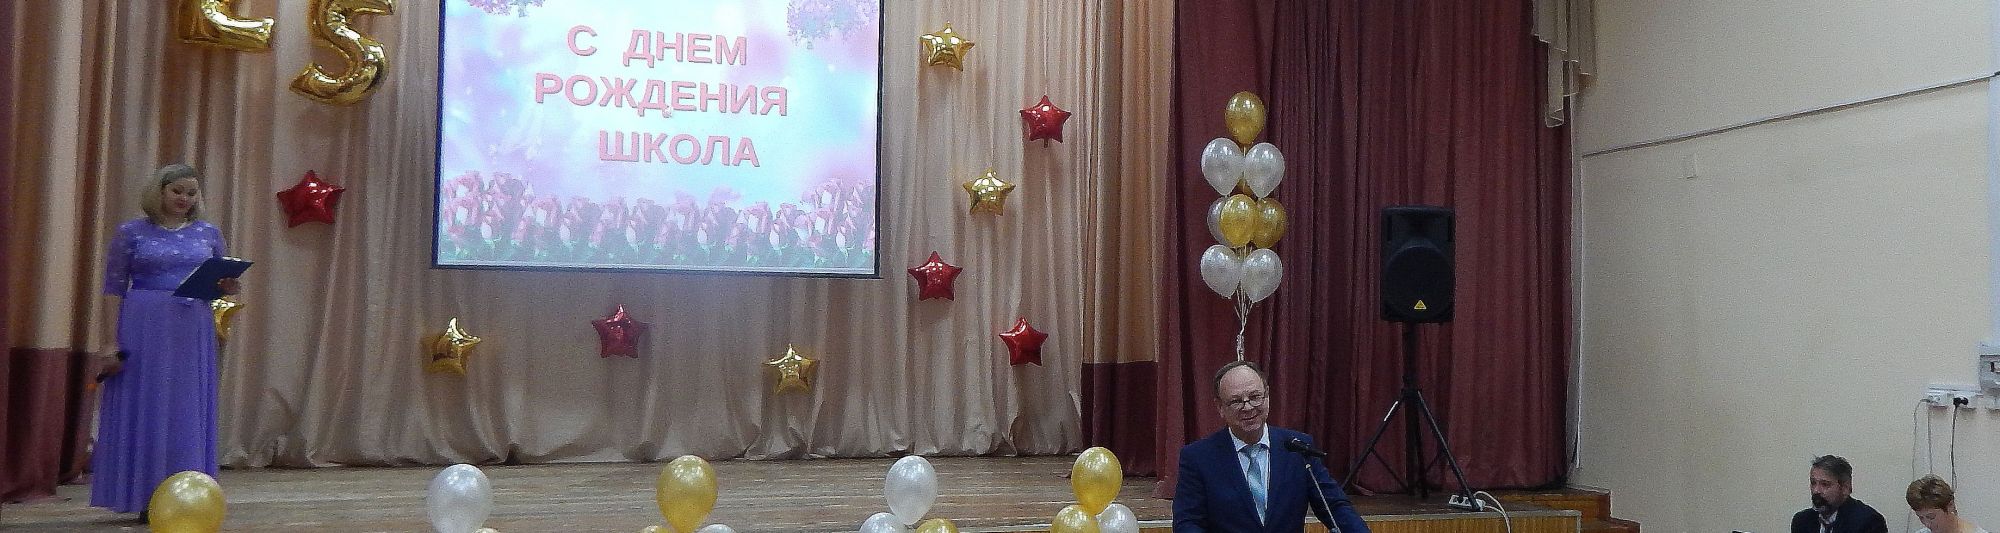 Депутат Олег Ковалев поздравил коллектив школы №58 с юбилеем